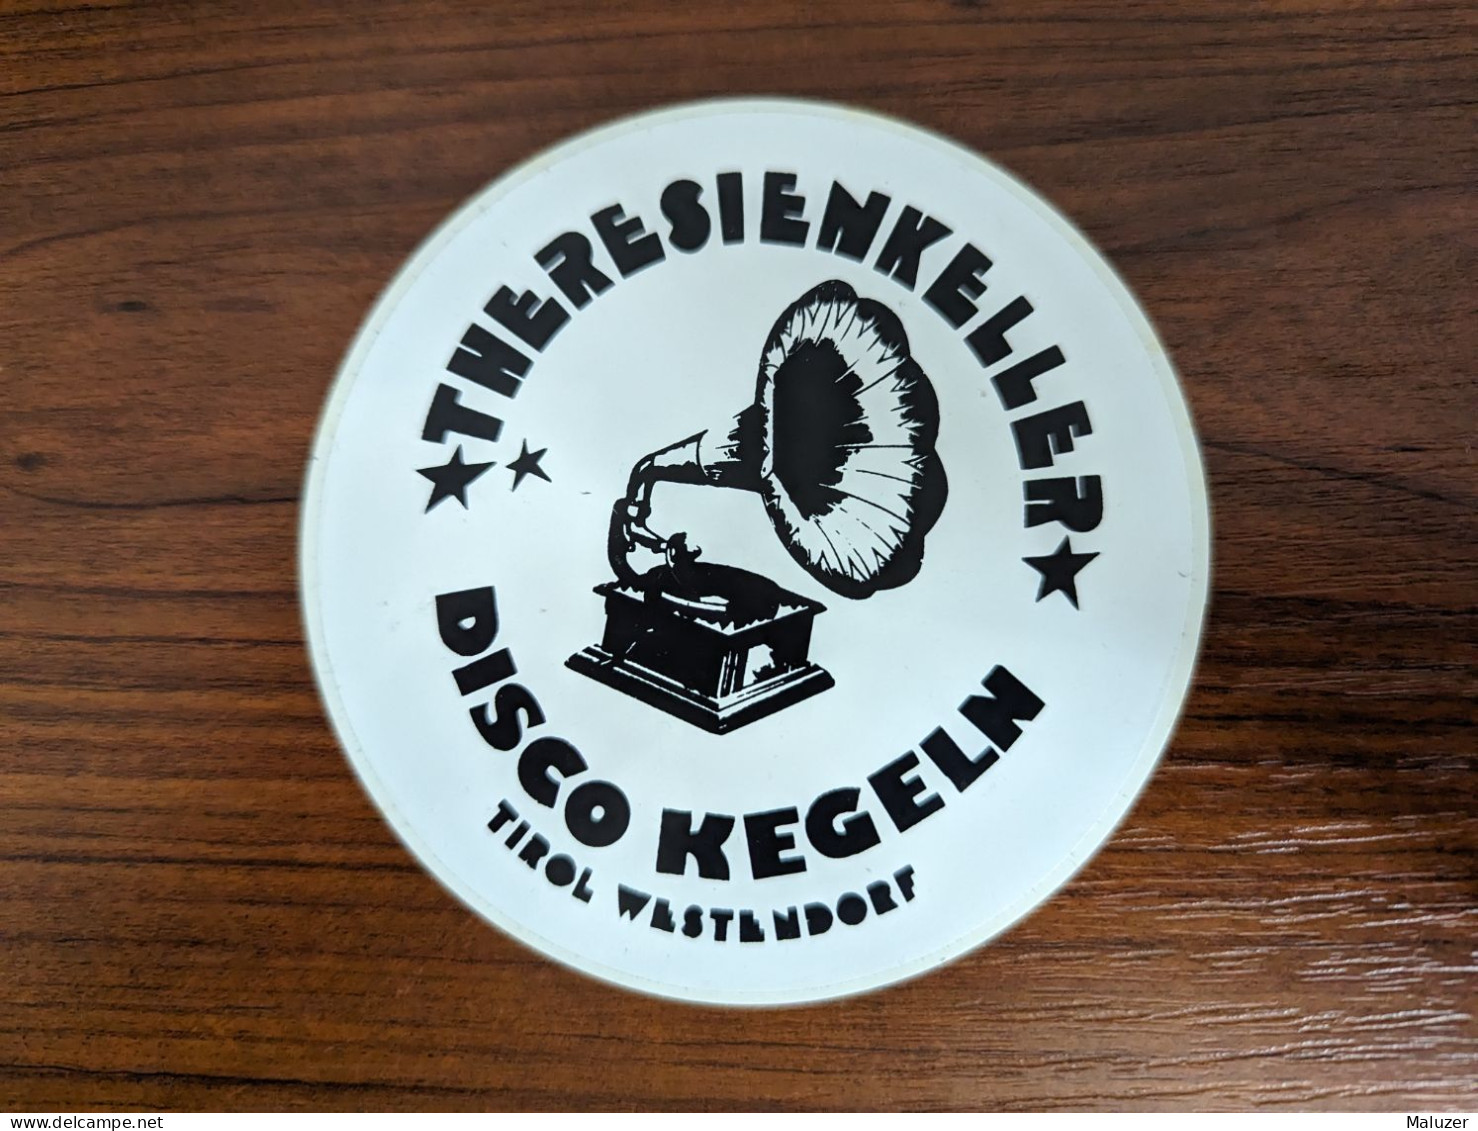 AUTOCOLLANT THERESIENKELLER – DISCO KEGELN – TIROL WESTENDORF – MAGASIN MUSIQUE AUTRICHE AUSTRIA OSTERREICH - GRAMOPHONE - Stickers